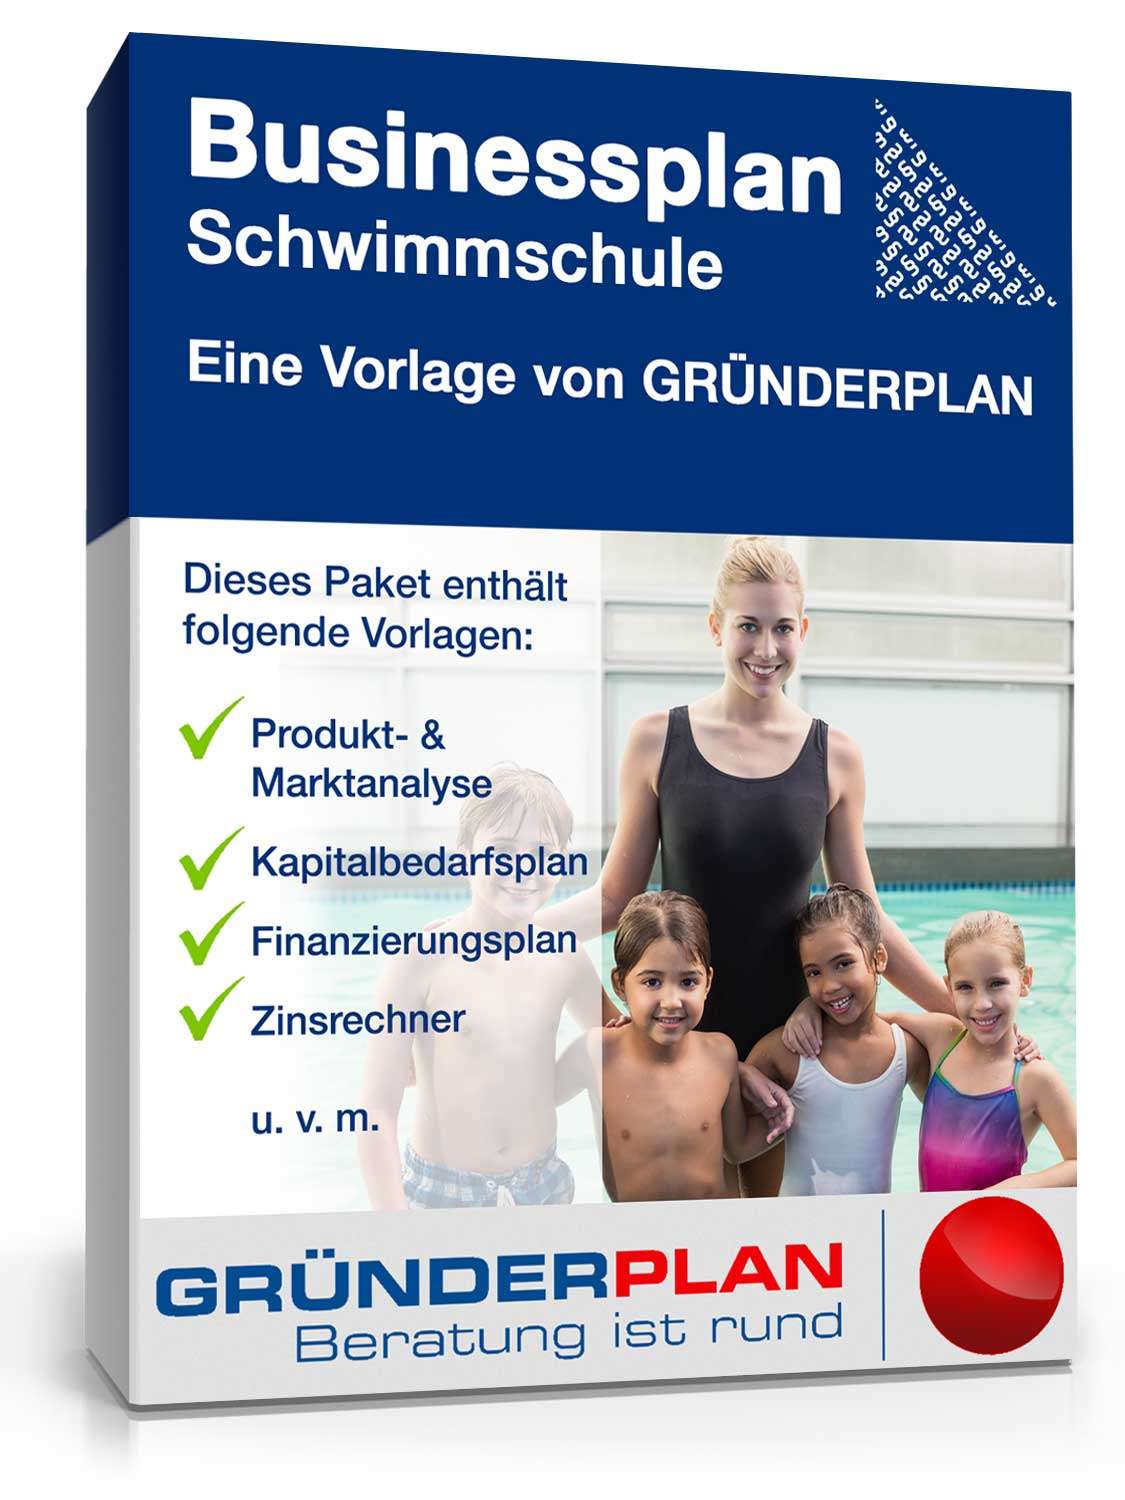 Hauptbild des Produkts: Businessplan Schwimmschule von Gründerplan